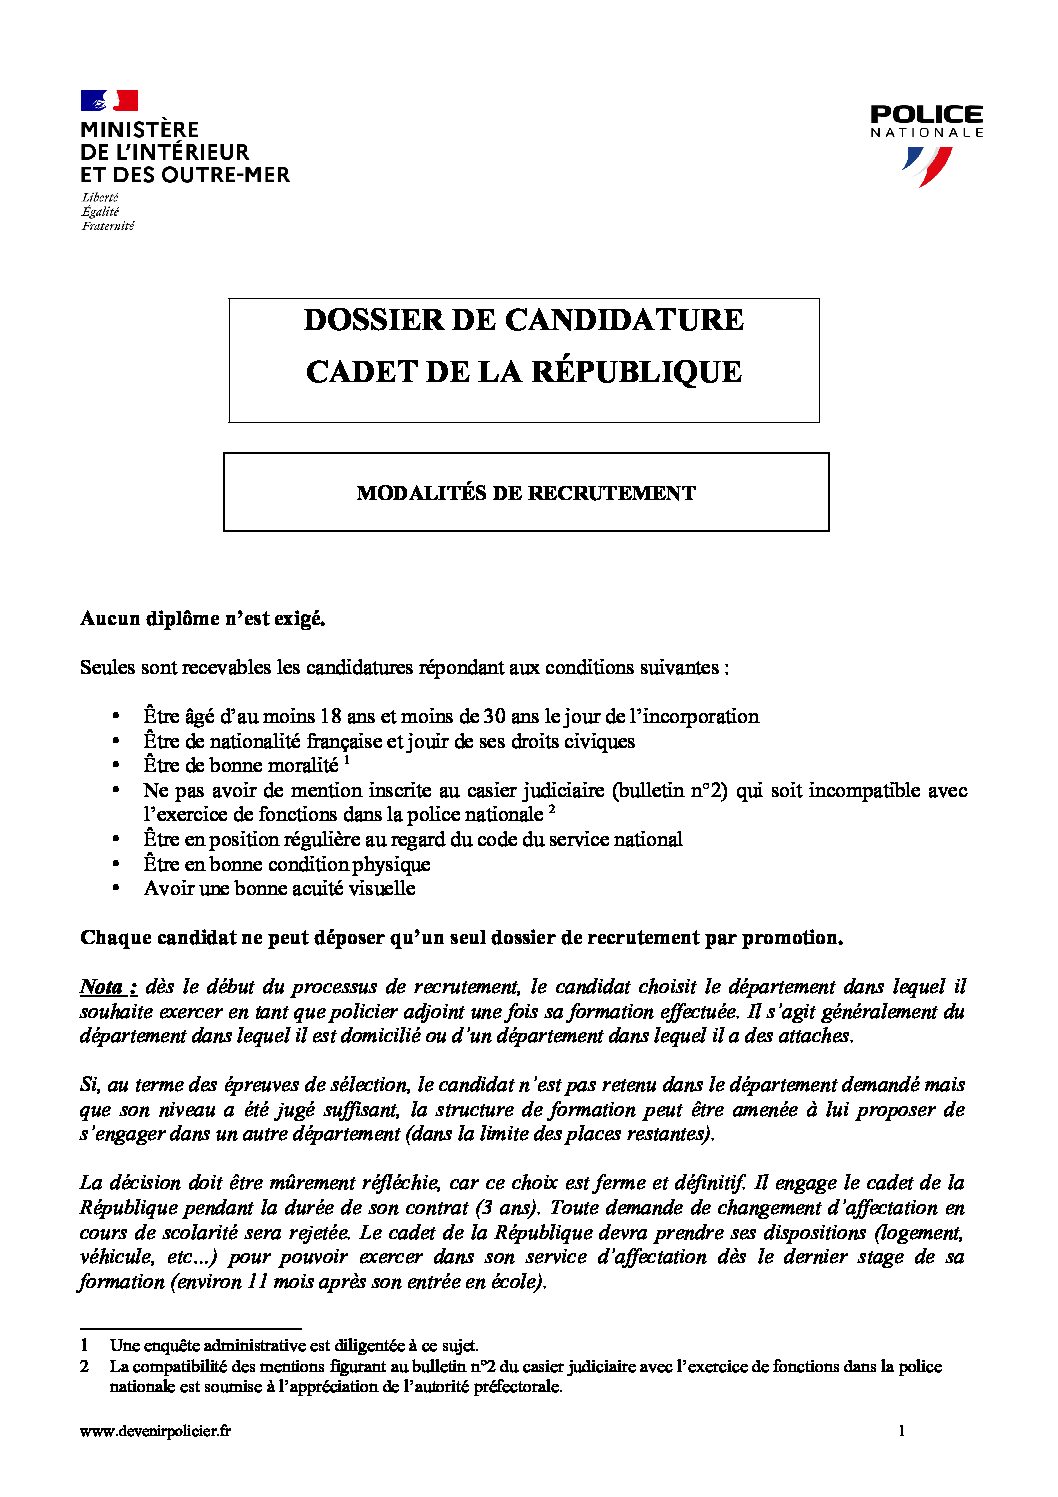 2 - dossier papier candidature cadet de la République